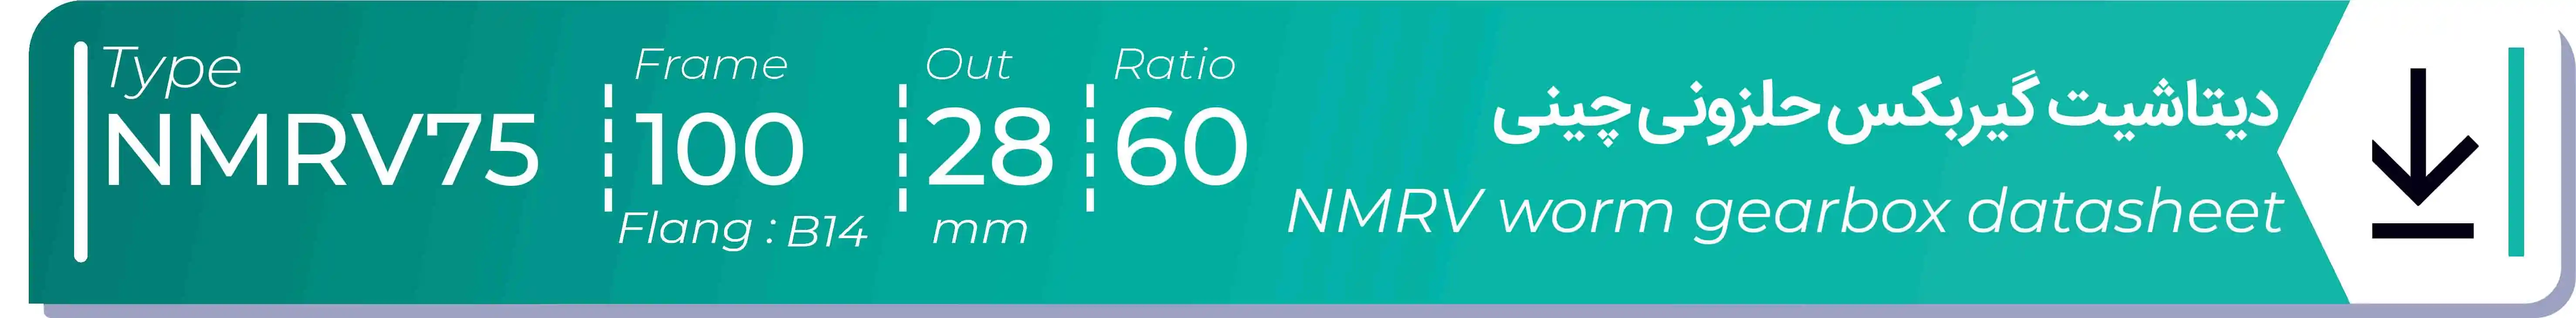  دیتاشیت و مشخصات فنی گیربکس حلزونی چینی   NMRV75  -  با خروجی 28- میلی متر و نسبت60 و فریم 100